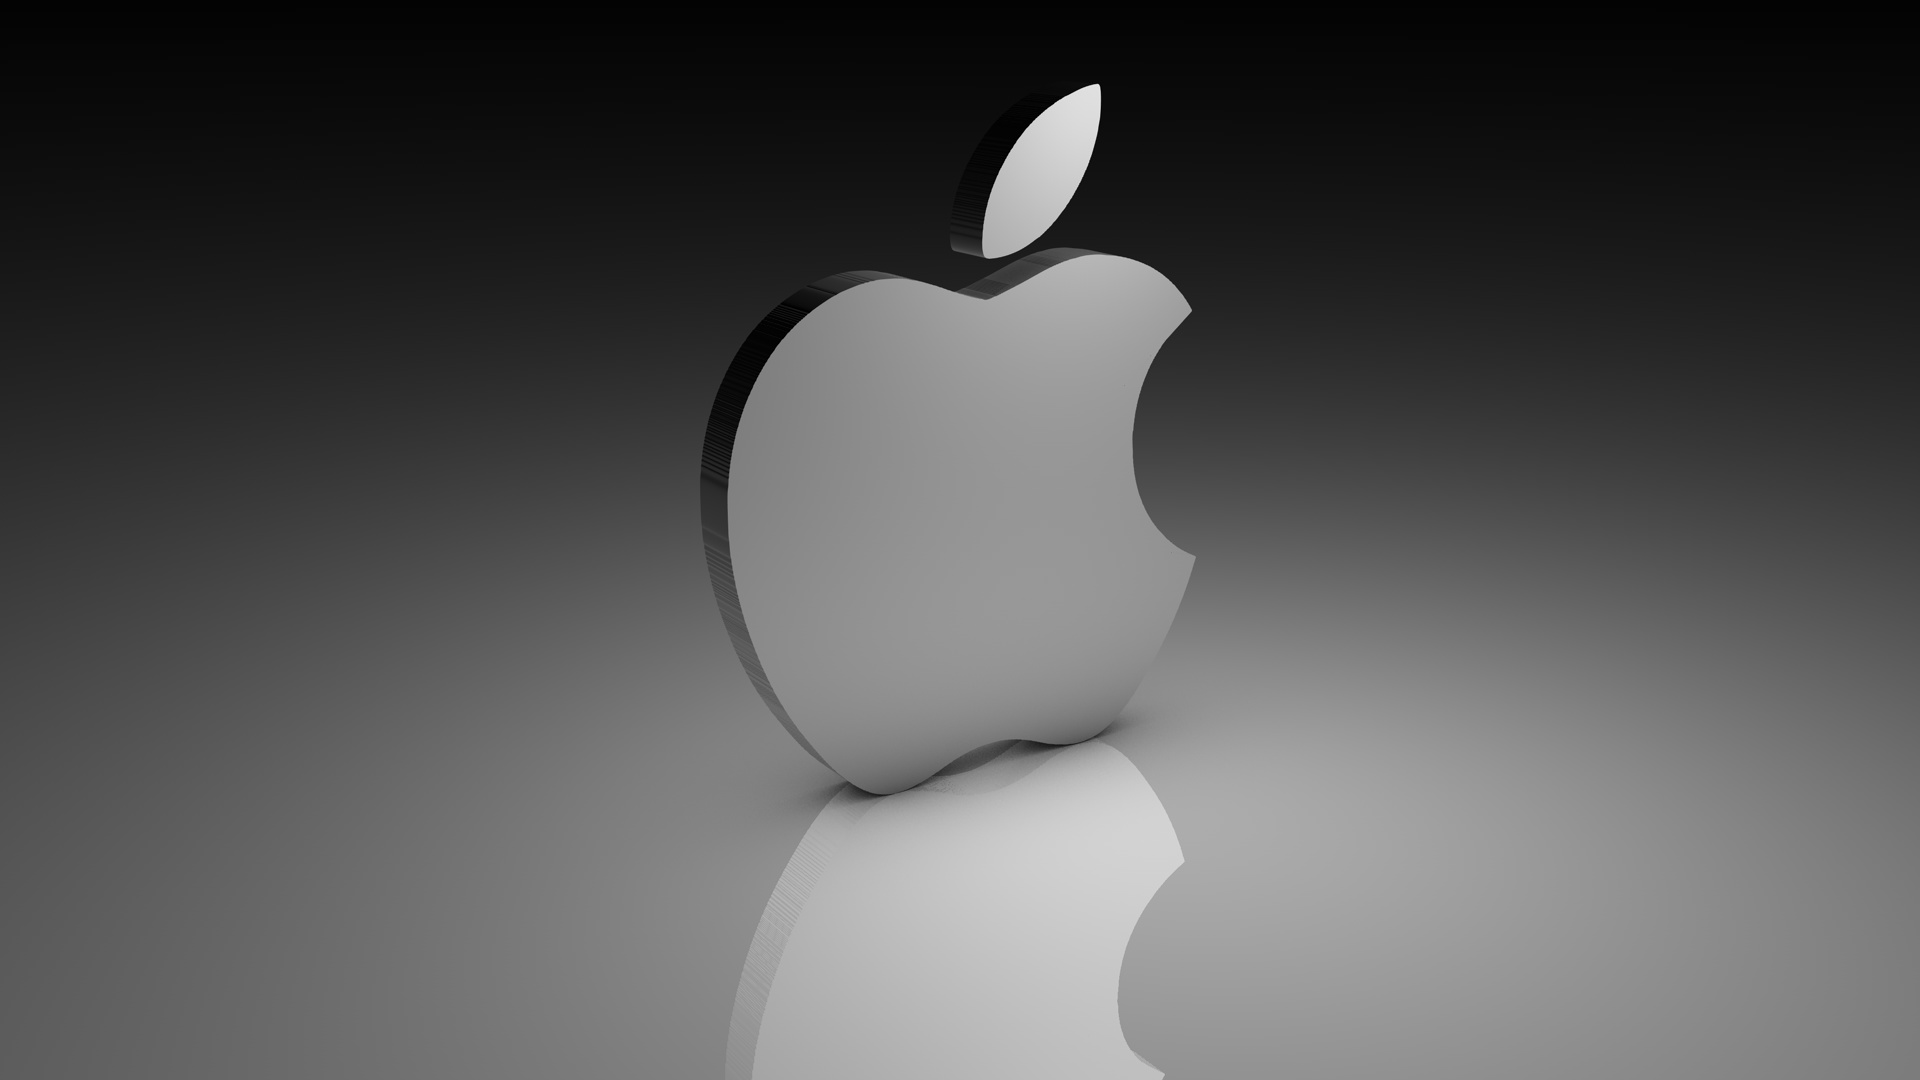 Apple Logo Wallpapers Hd Pixelstalk Net